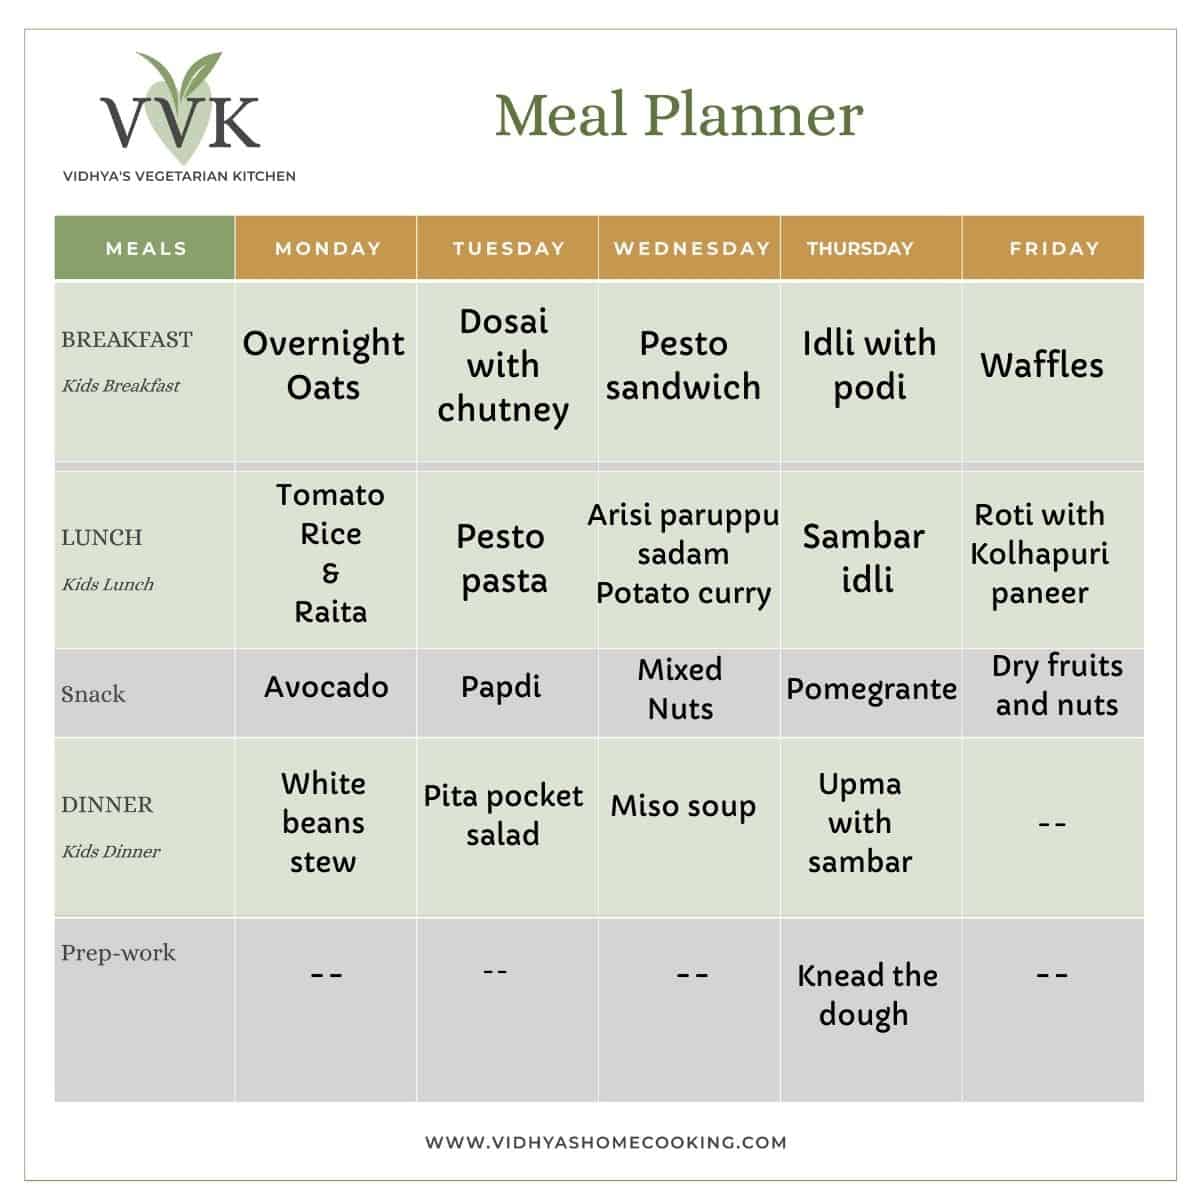 VVK meal planner